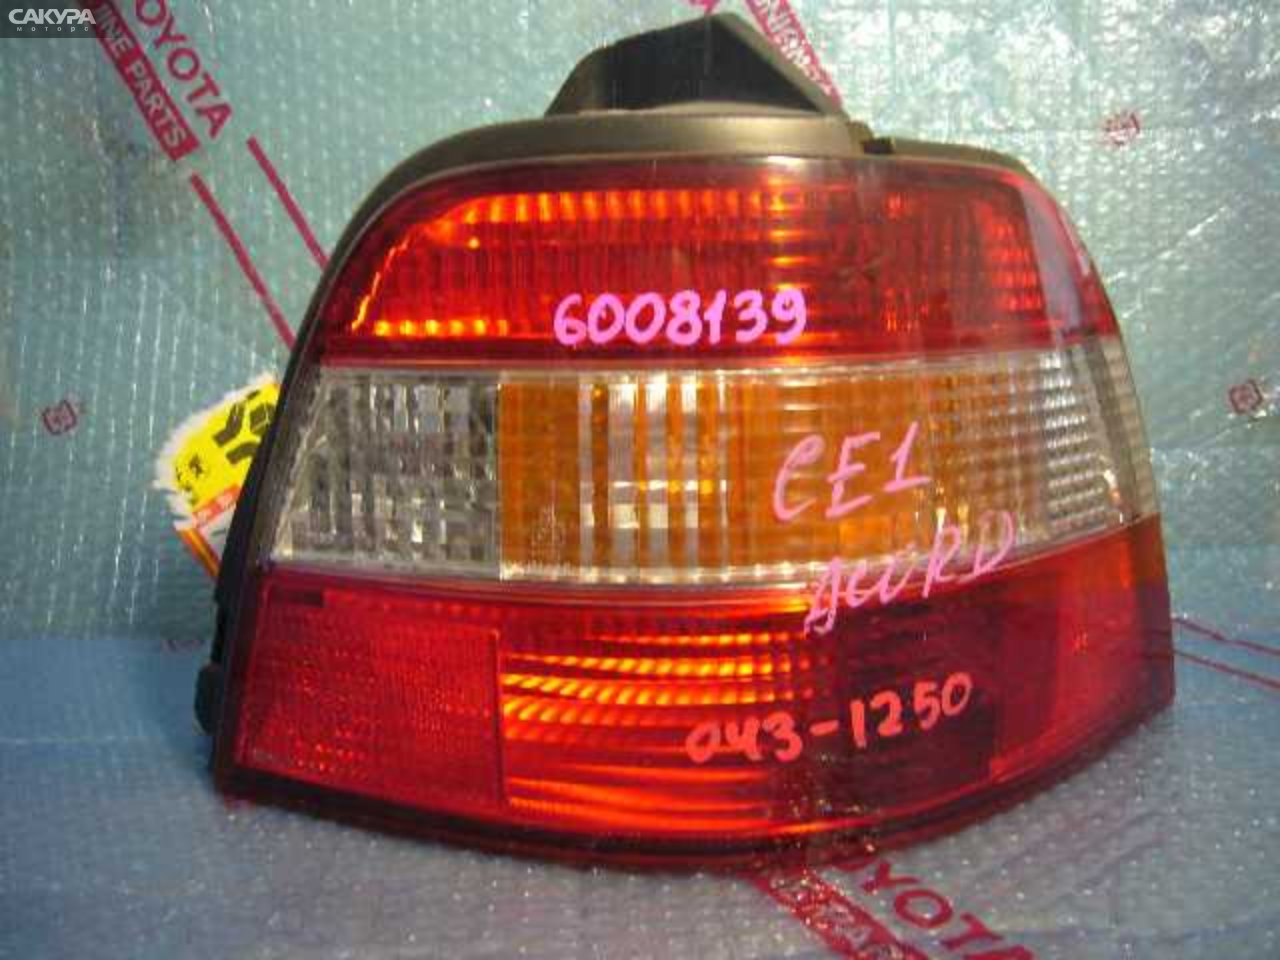 Фонарь стоп-сигнала правый Honda Accord Wagon CE1 043-1250: купить в Сакура Кемерово.